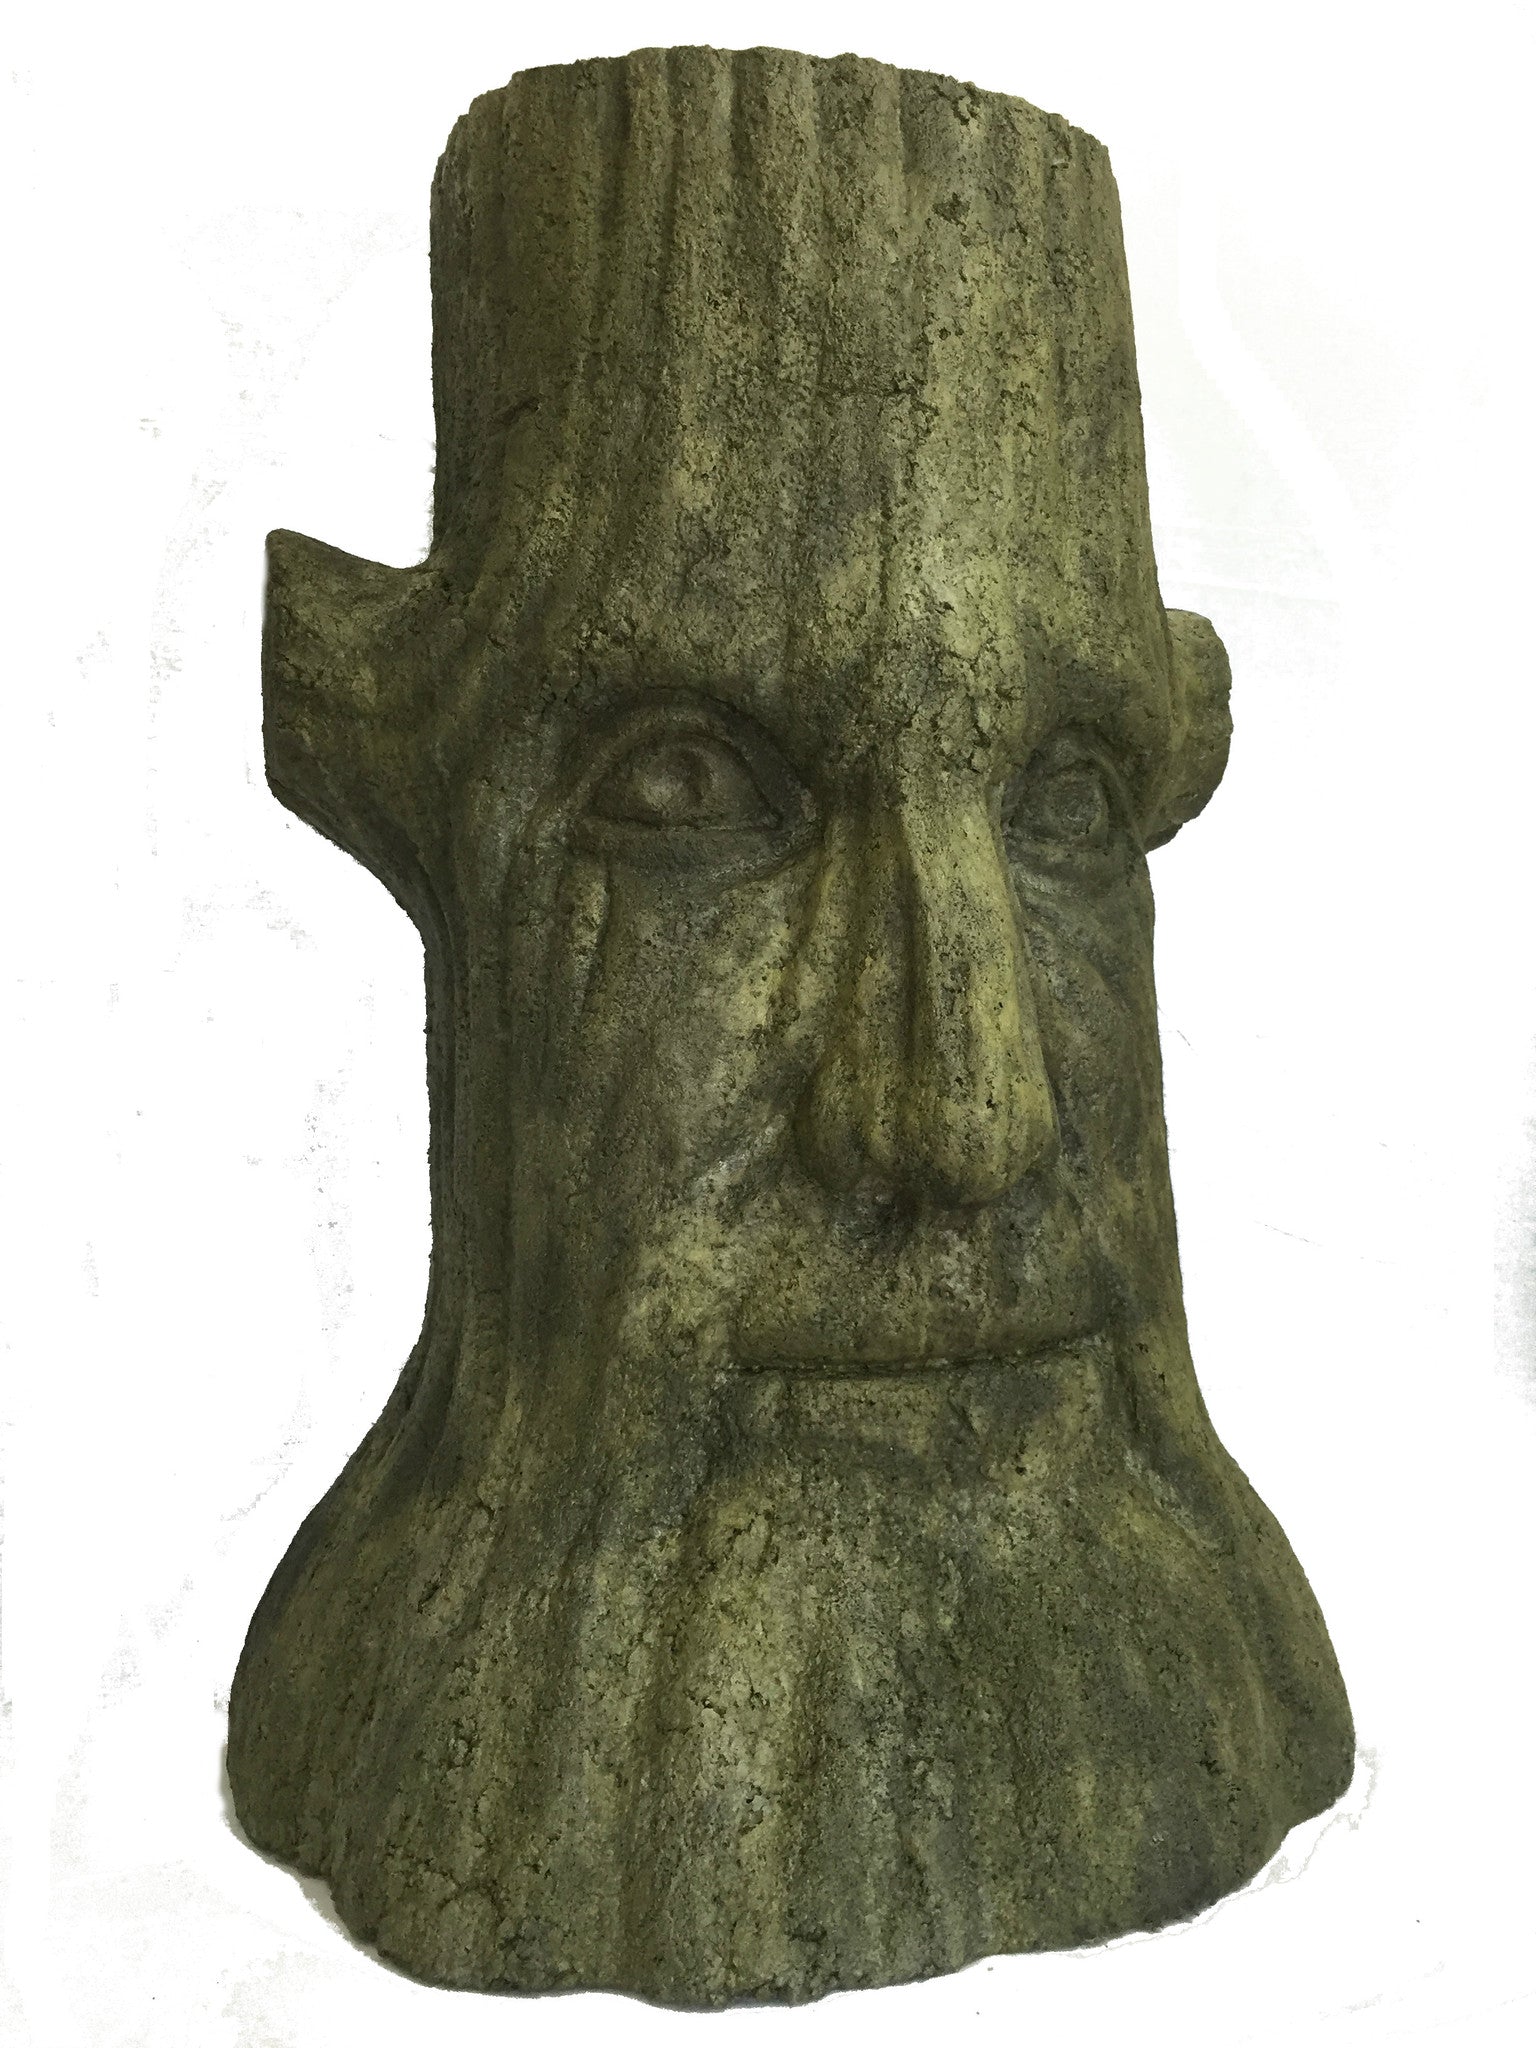 Treebor in York Stone